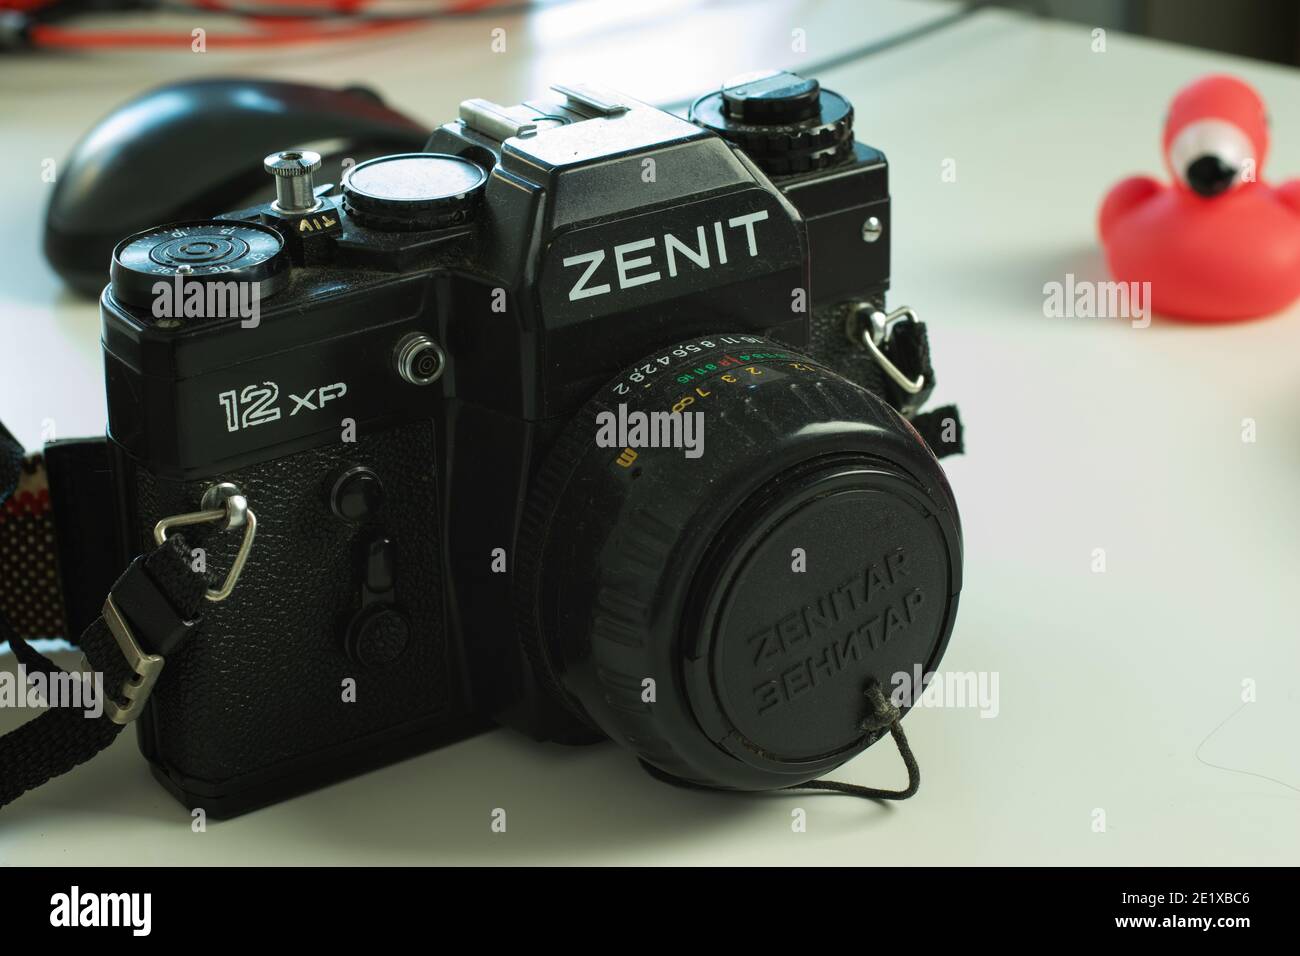 Moscou, Russie - 5 décembre 2020 : appareil photo Zenit Vintage avec objectif Zenitar, Editorial. Banque D'Images